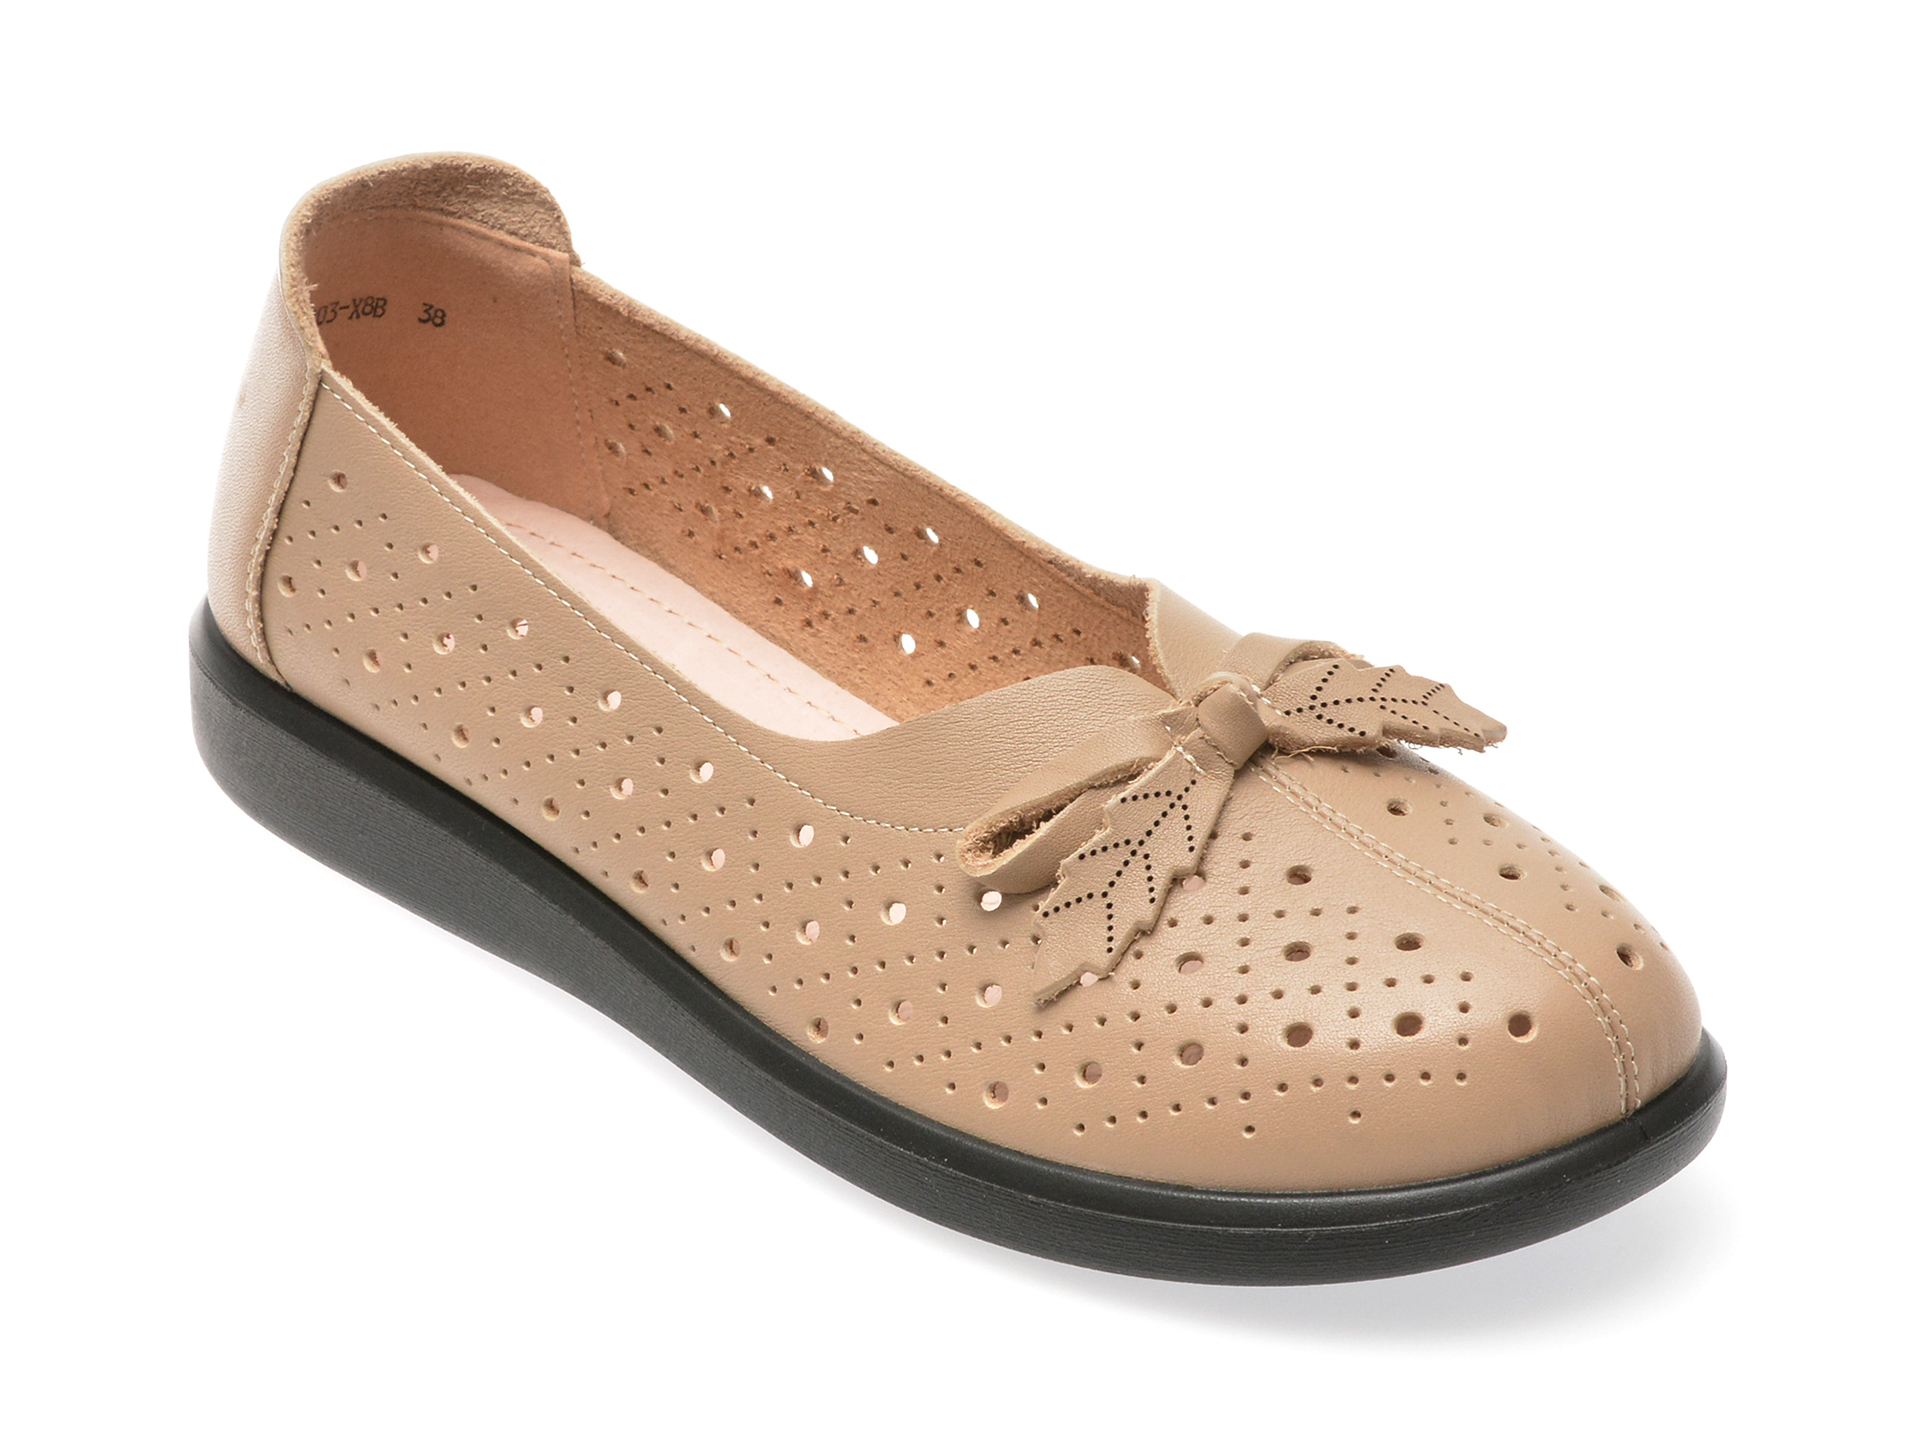 Pantofi casual FLAVIA PASSINI maro, 3507803, din piele naturala